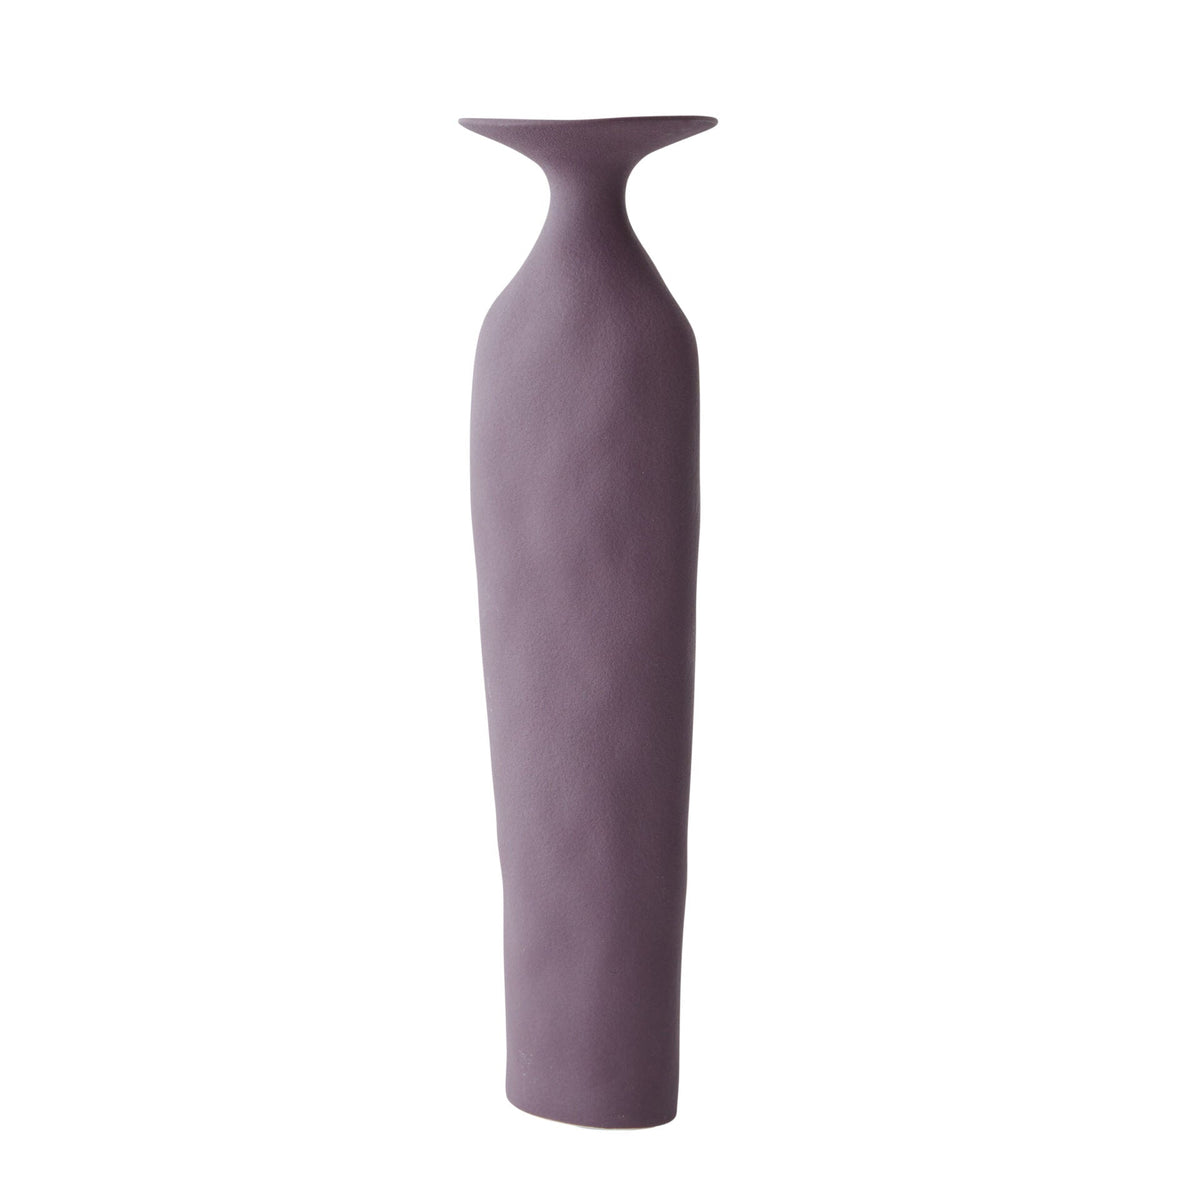 Alice Ceramic Vase in Mulberry - 28cm - Notbrand